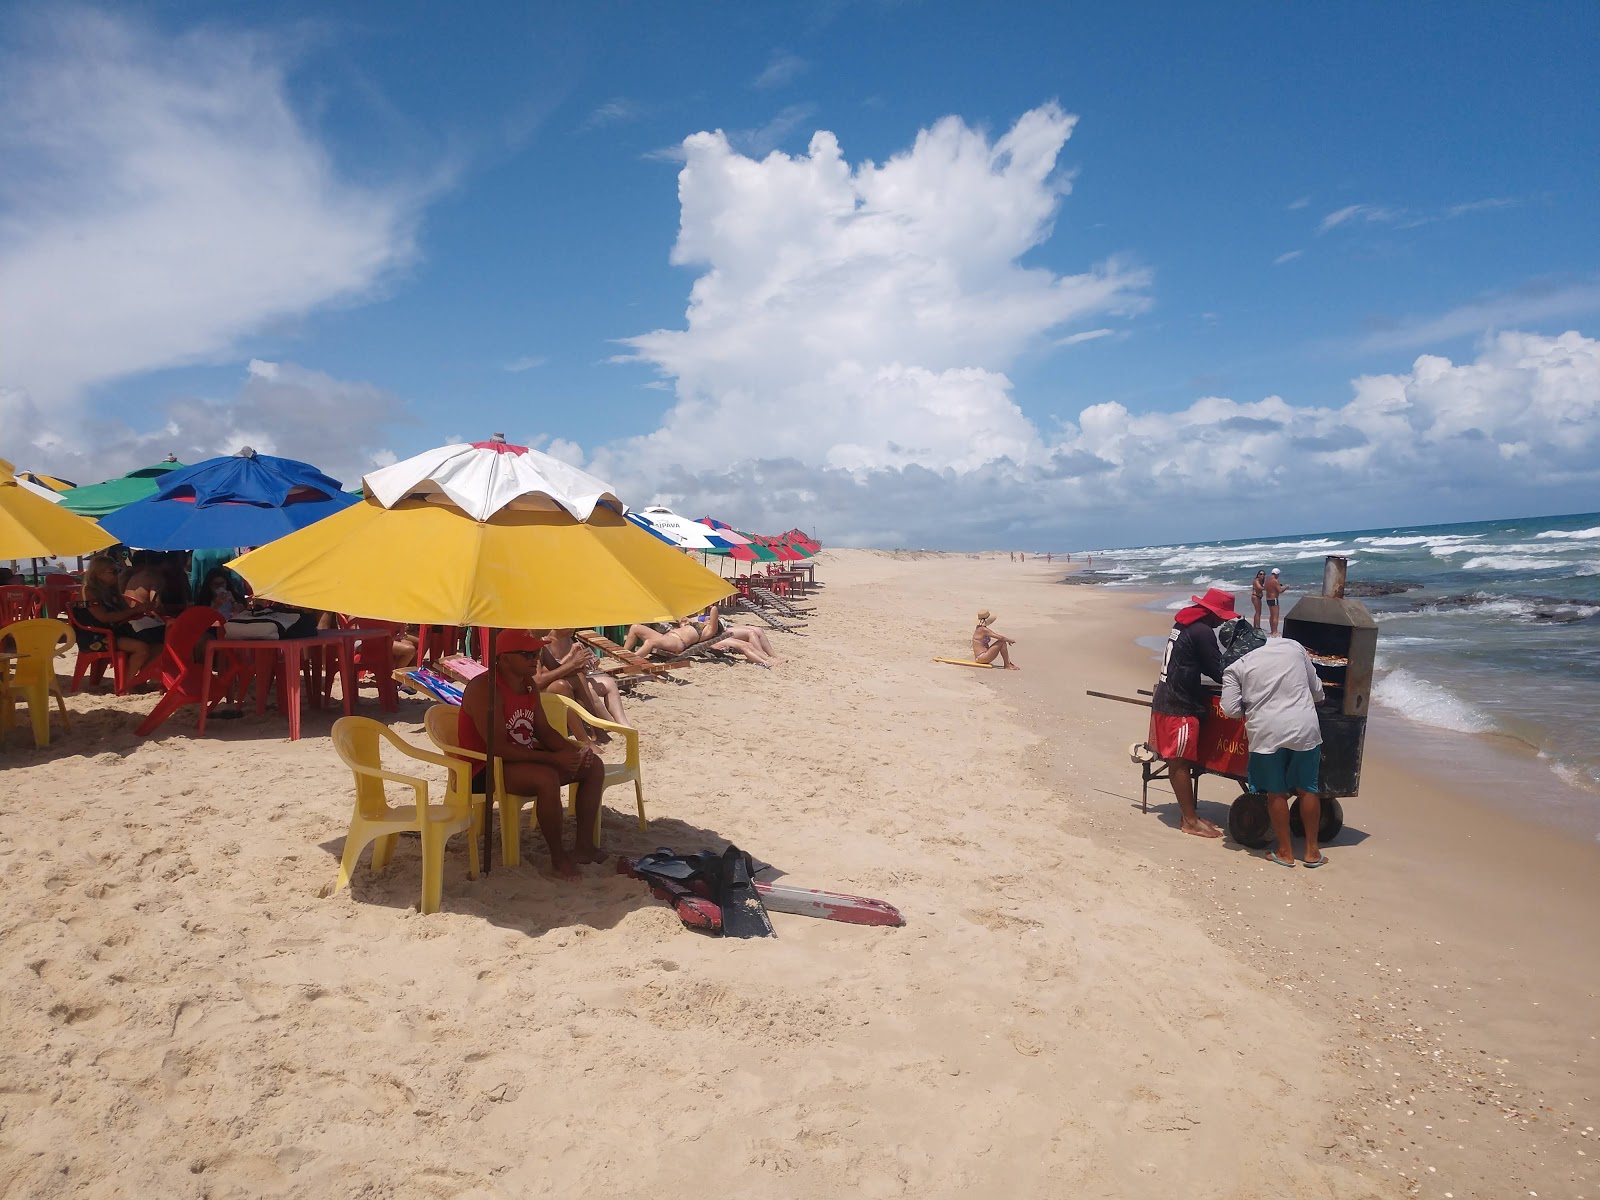 Praia de Aguas Belas'in fotoğrafı parlak kum yüzey ile